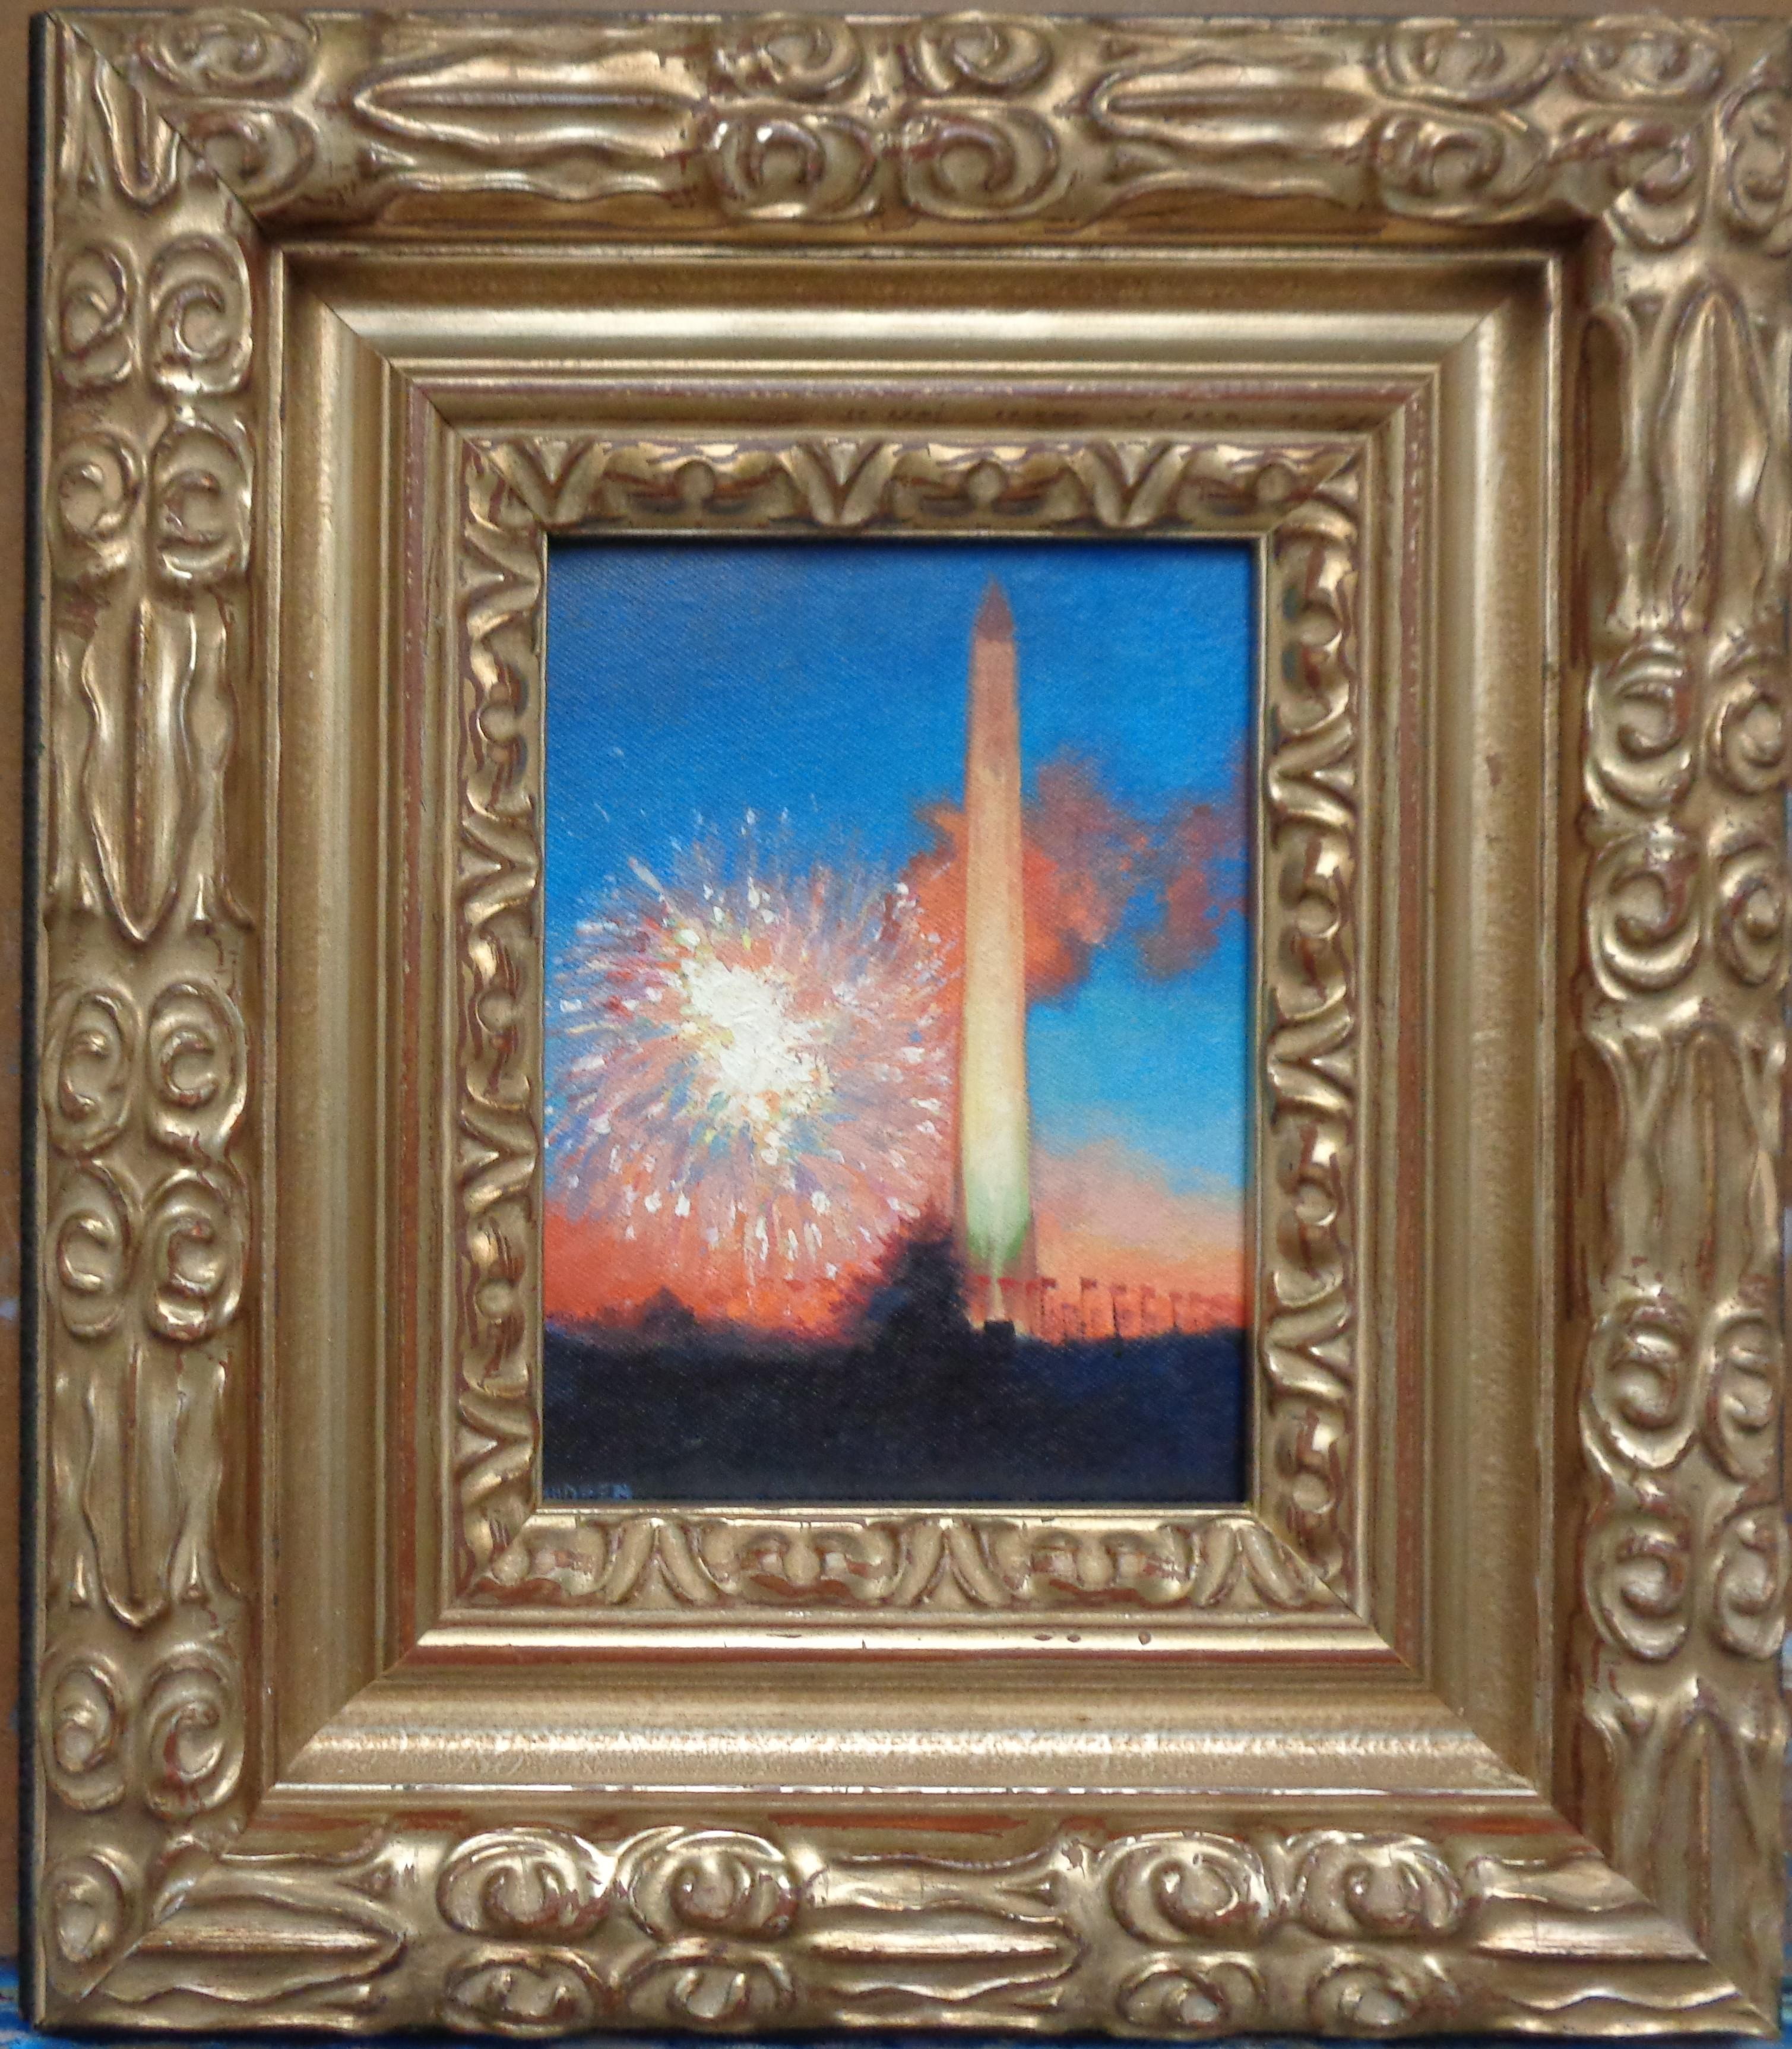 Éclat spectaculaire,
4 juillet, Washington Monument
huile/panneau 6 x 8 image encadrée dans un cadre très voyant. Le cadre peut être modifié.
Spectacular Radiance est une peinture à l'huile sur panneau de toile de l'artiste contemporain primé